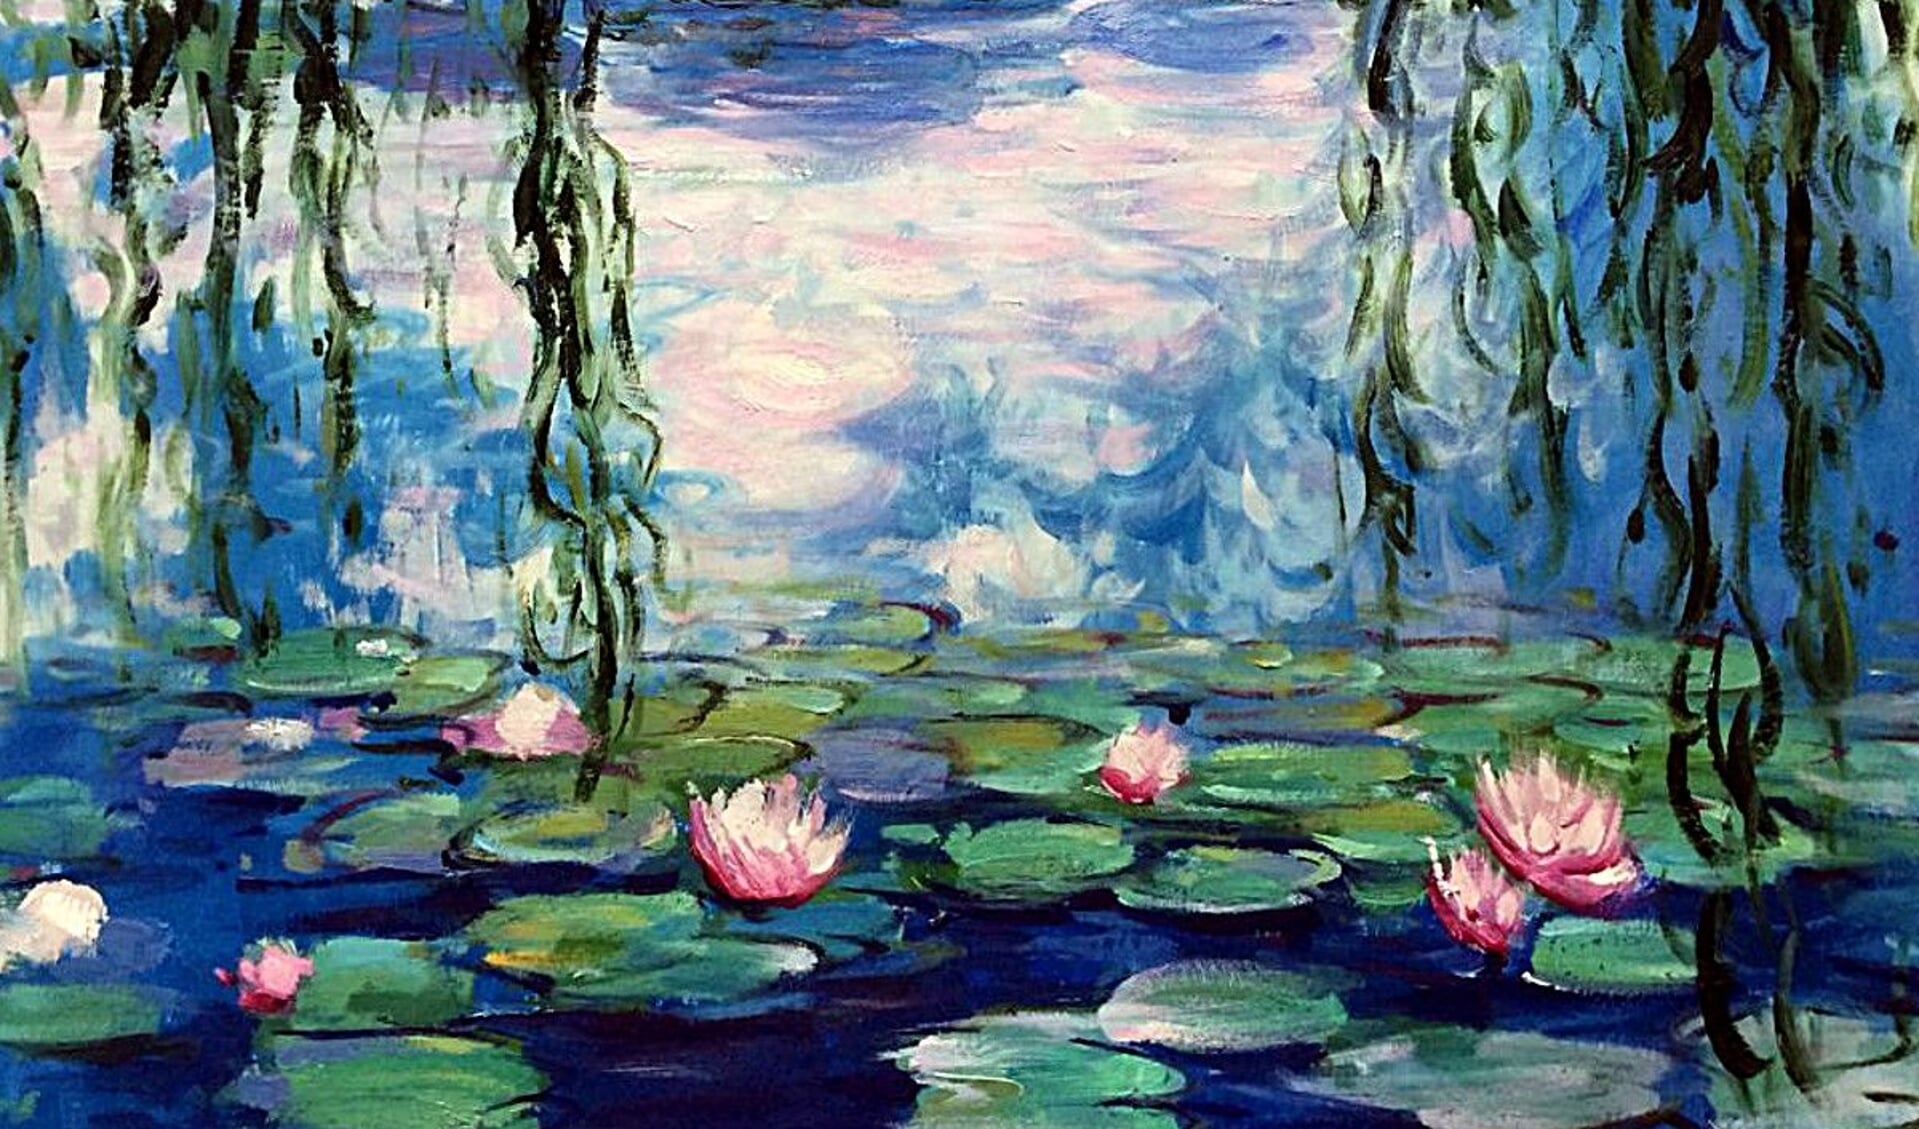 Beeld uit de documentaire 'Water Lilies of Monet'. Foto: PR